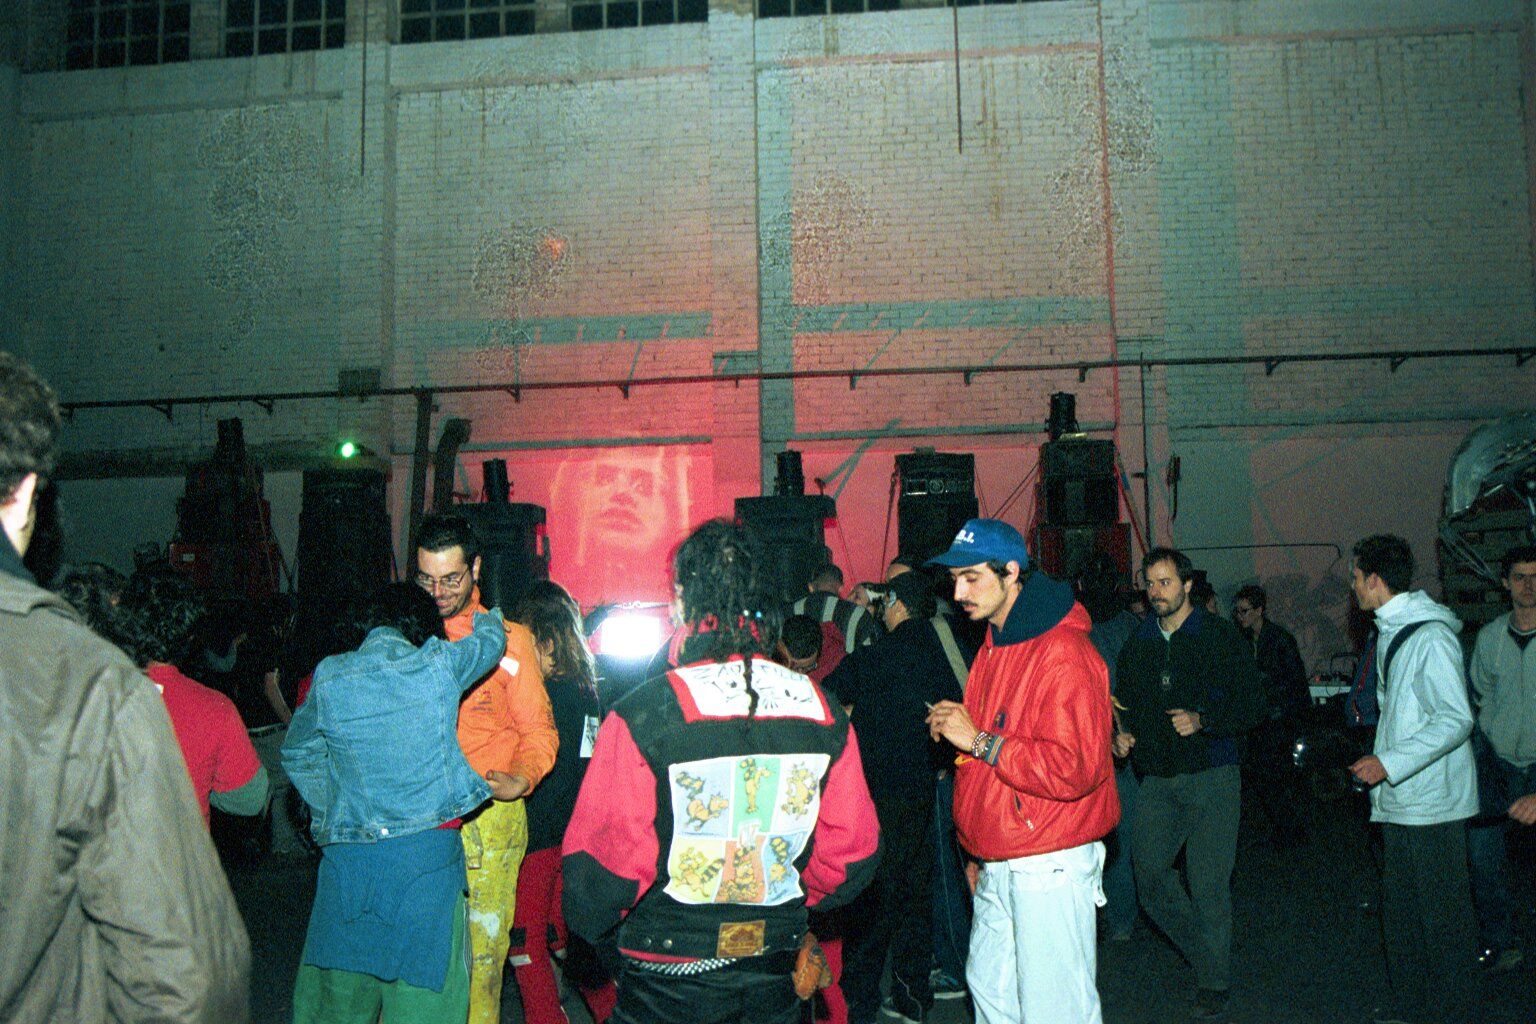 Imagen de una 'rave' ilegal en Barcelona a principios de los 2000s.